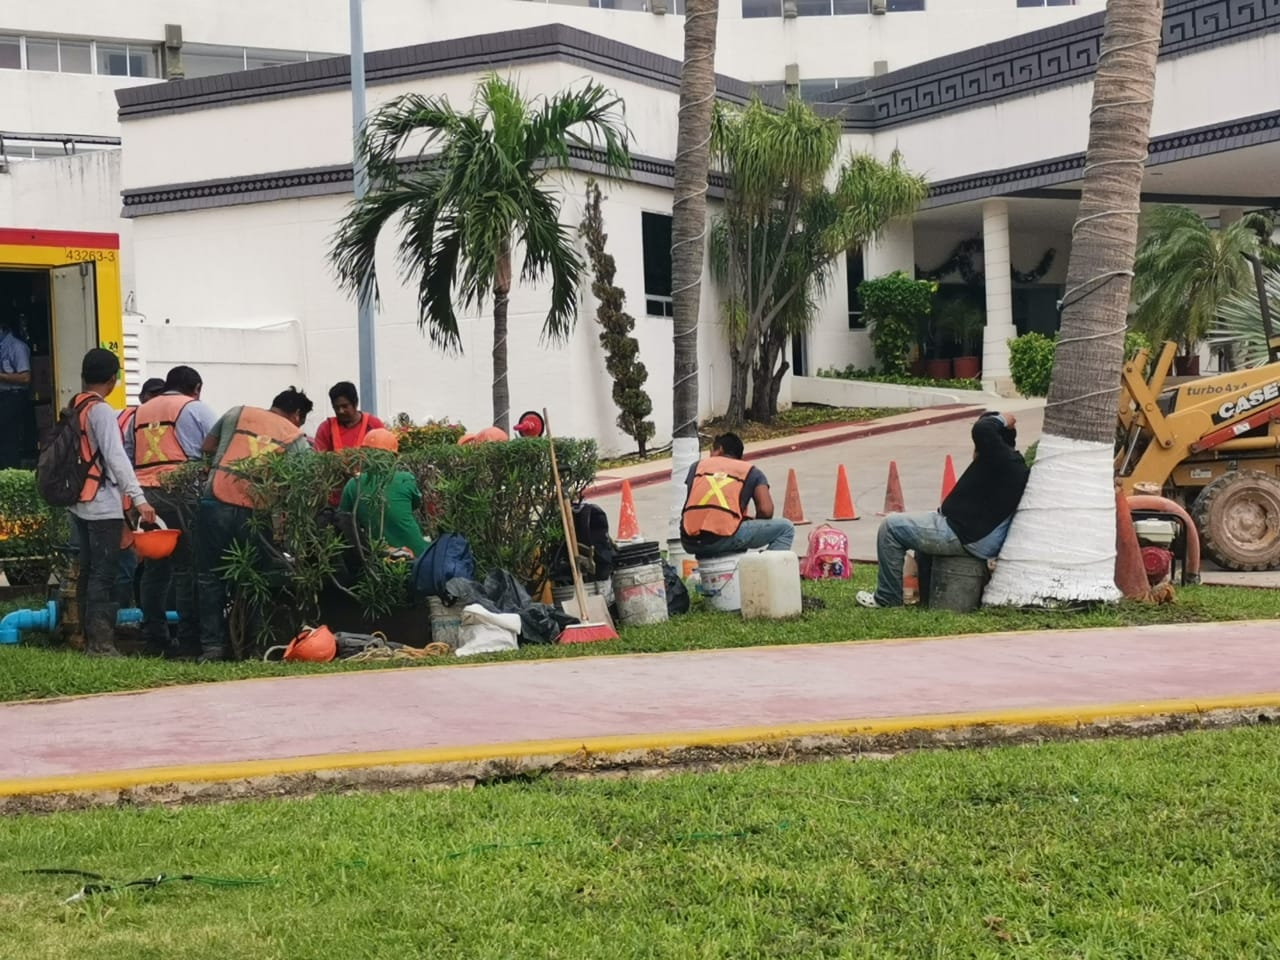 Aumentarán salario mínimo en Cancún, a pesar de la pandemia